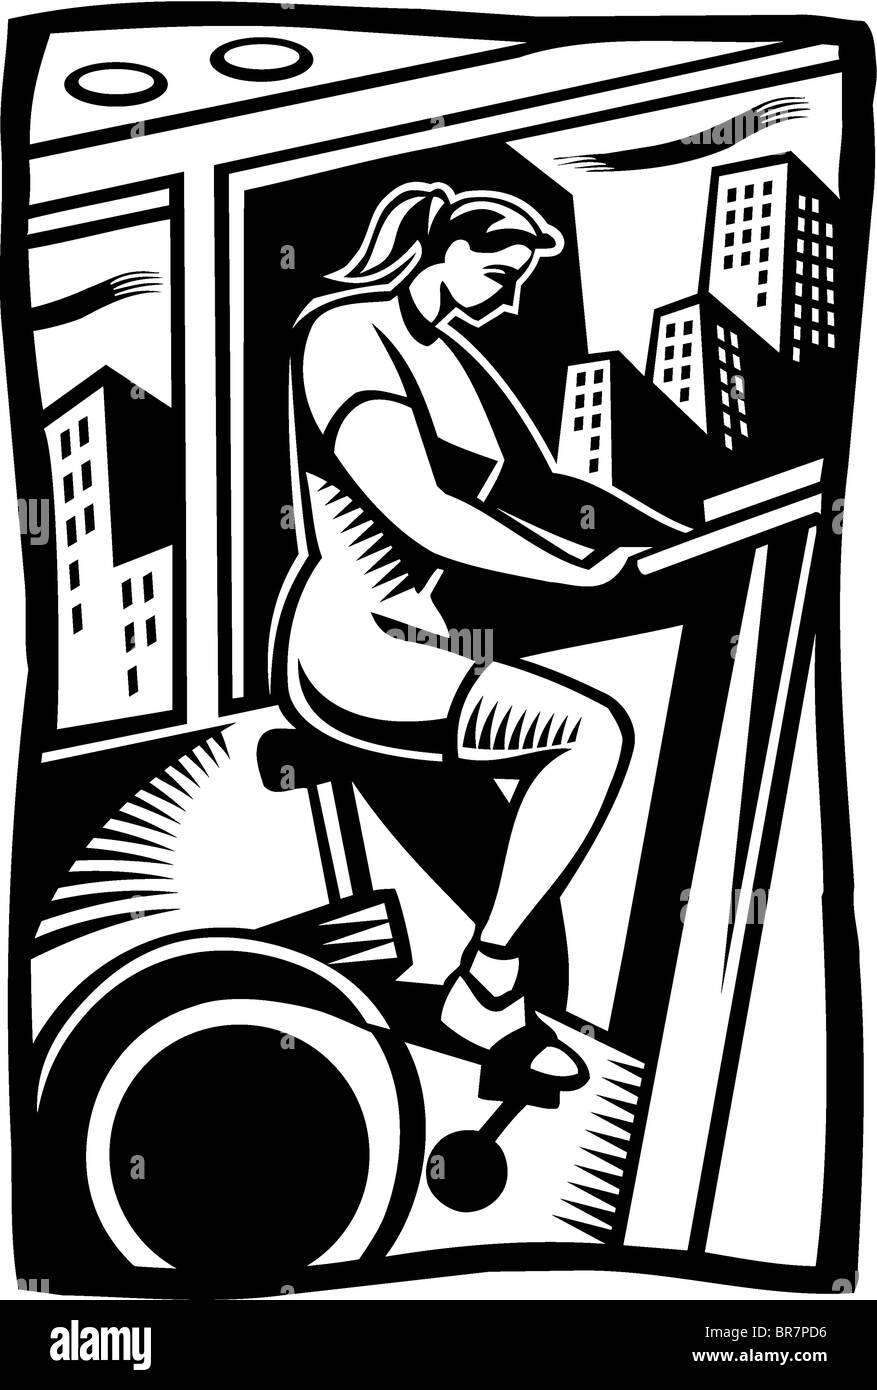 Ein schwarz-weiß Zeichnung einer Frau auf einem stationären Fahrrad Ausübung Stockfoto